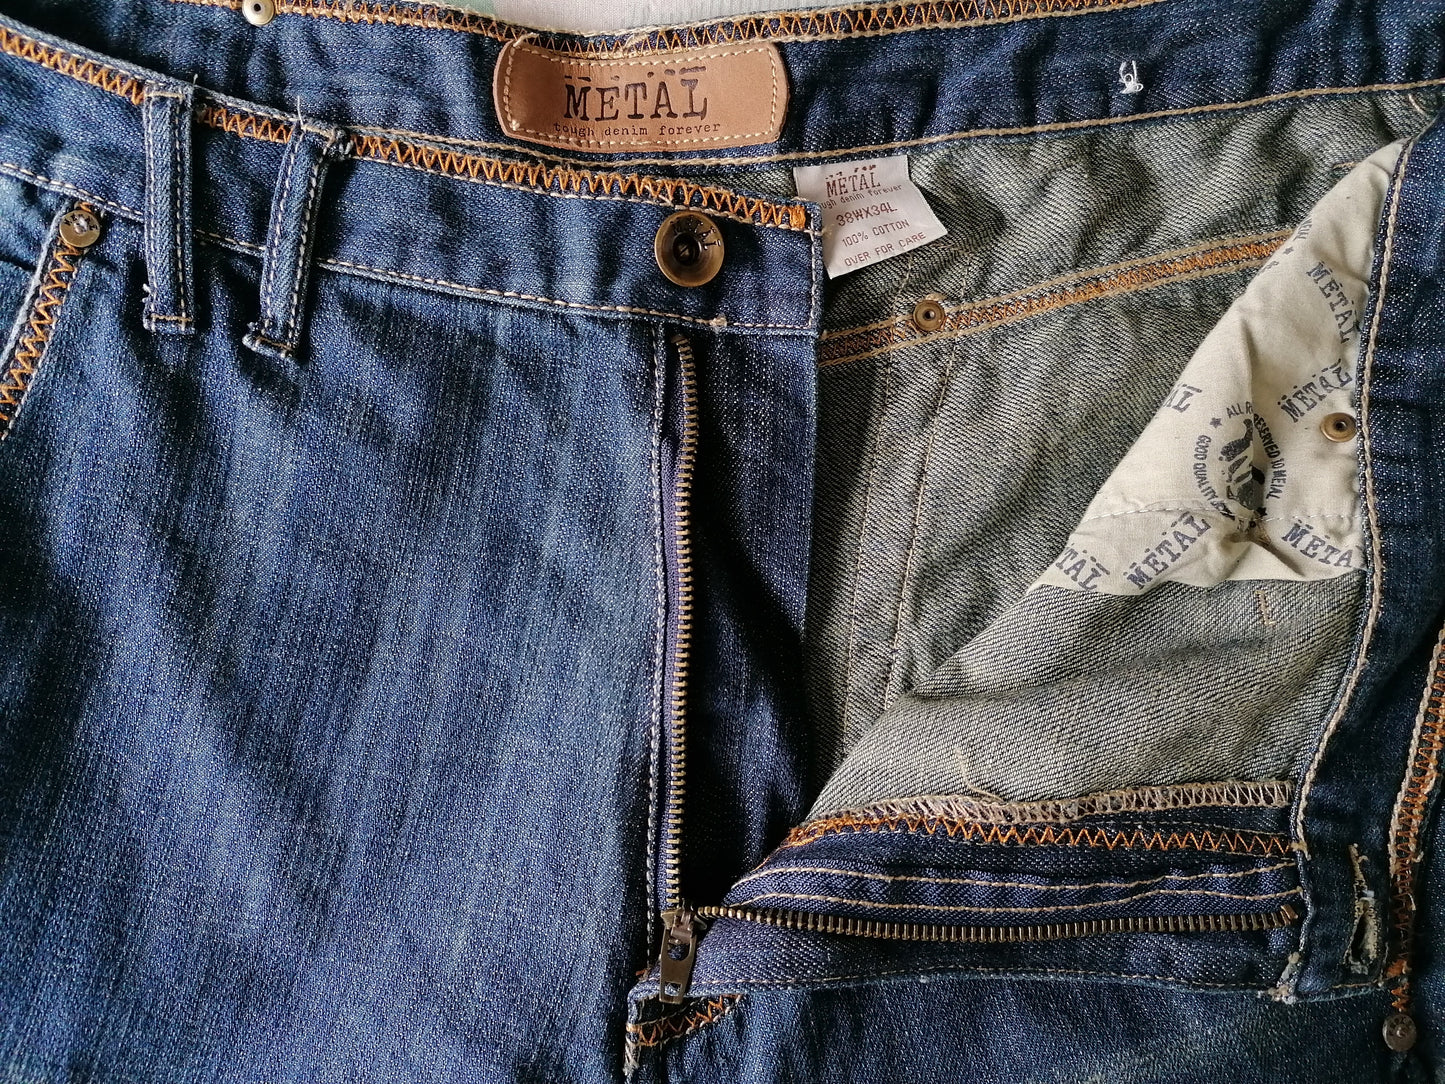 Jeans de metal duro. Azul con costuras marrones. Tamaño W38 - L34. Piernas anchas.